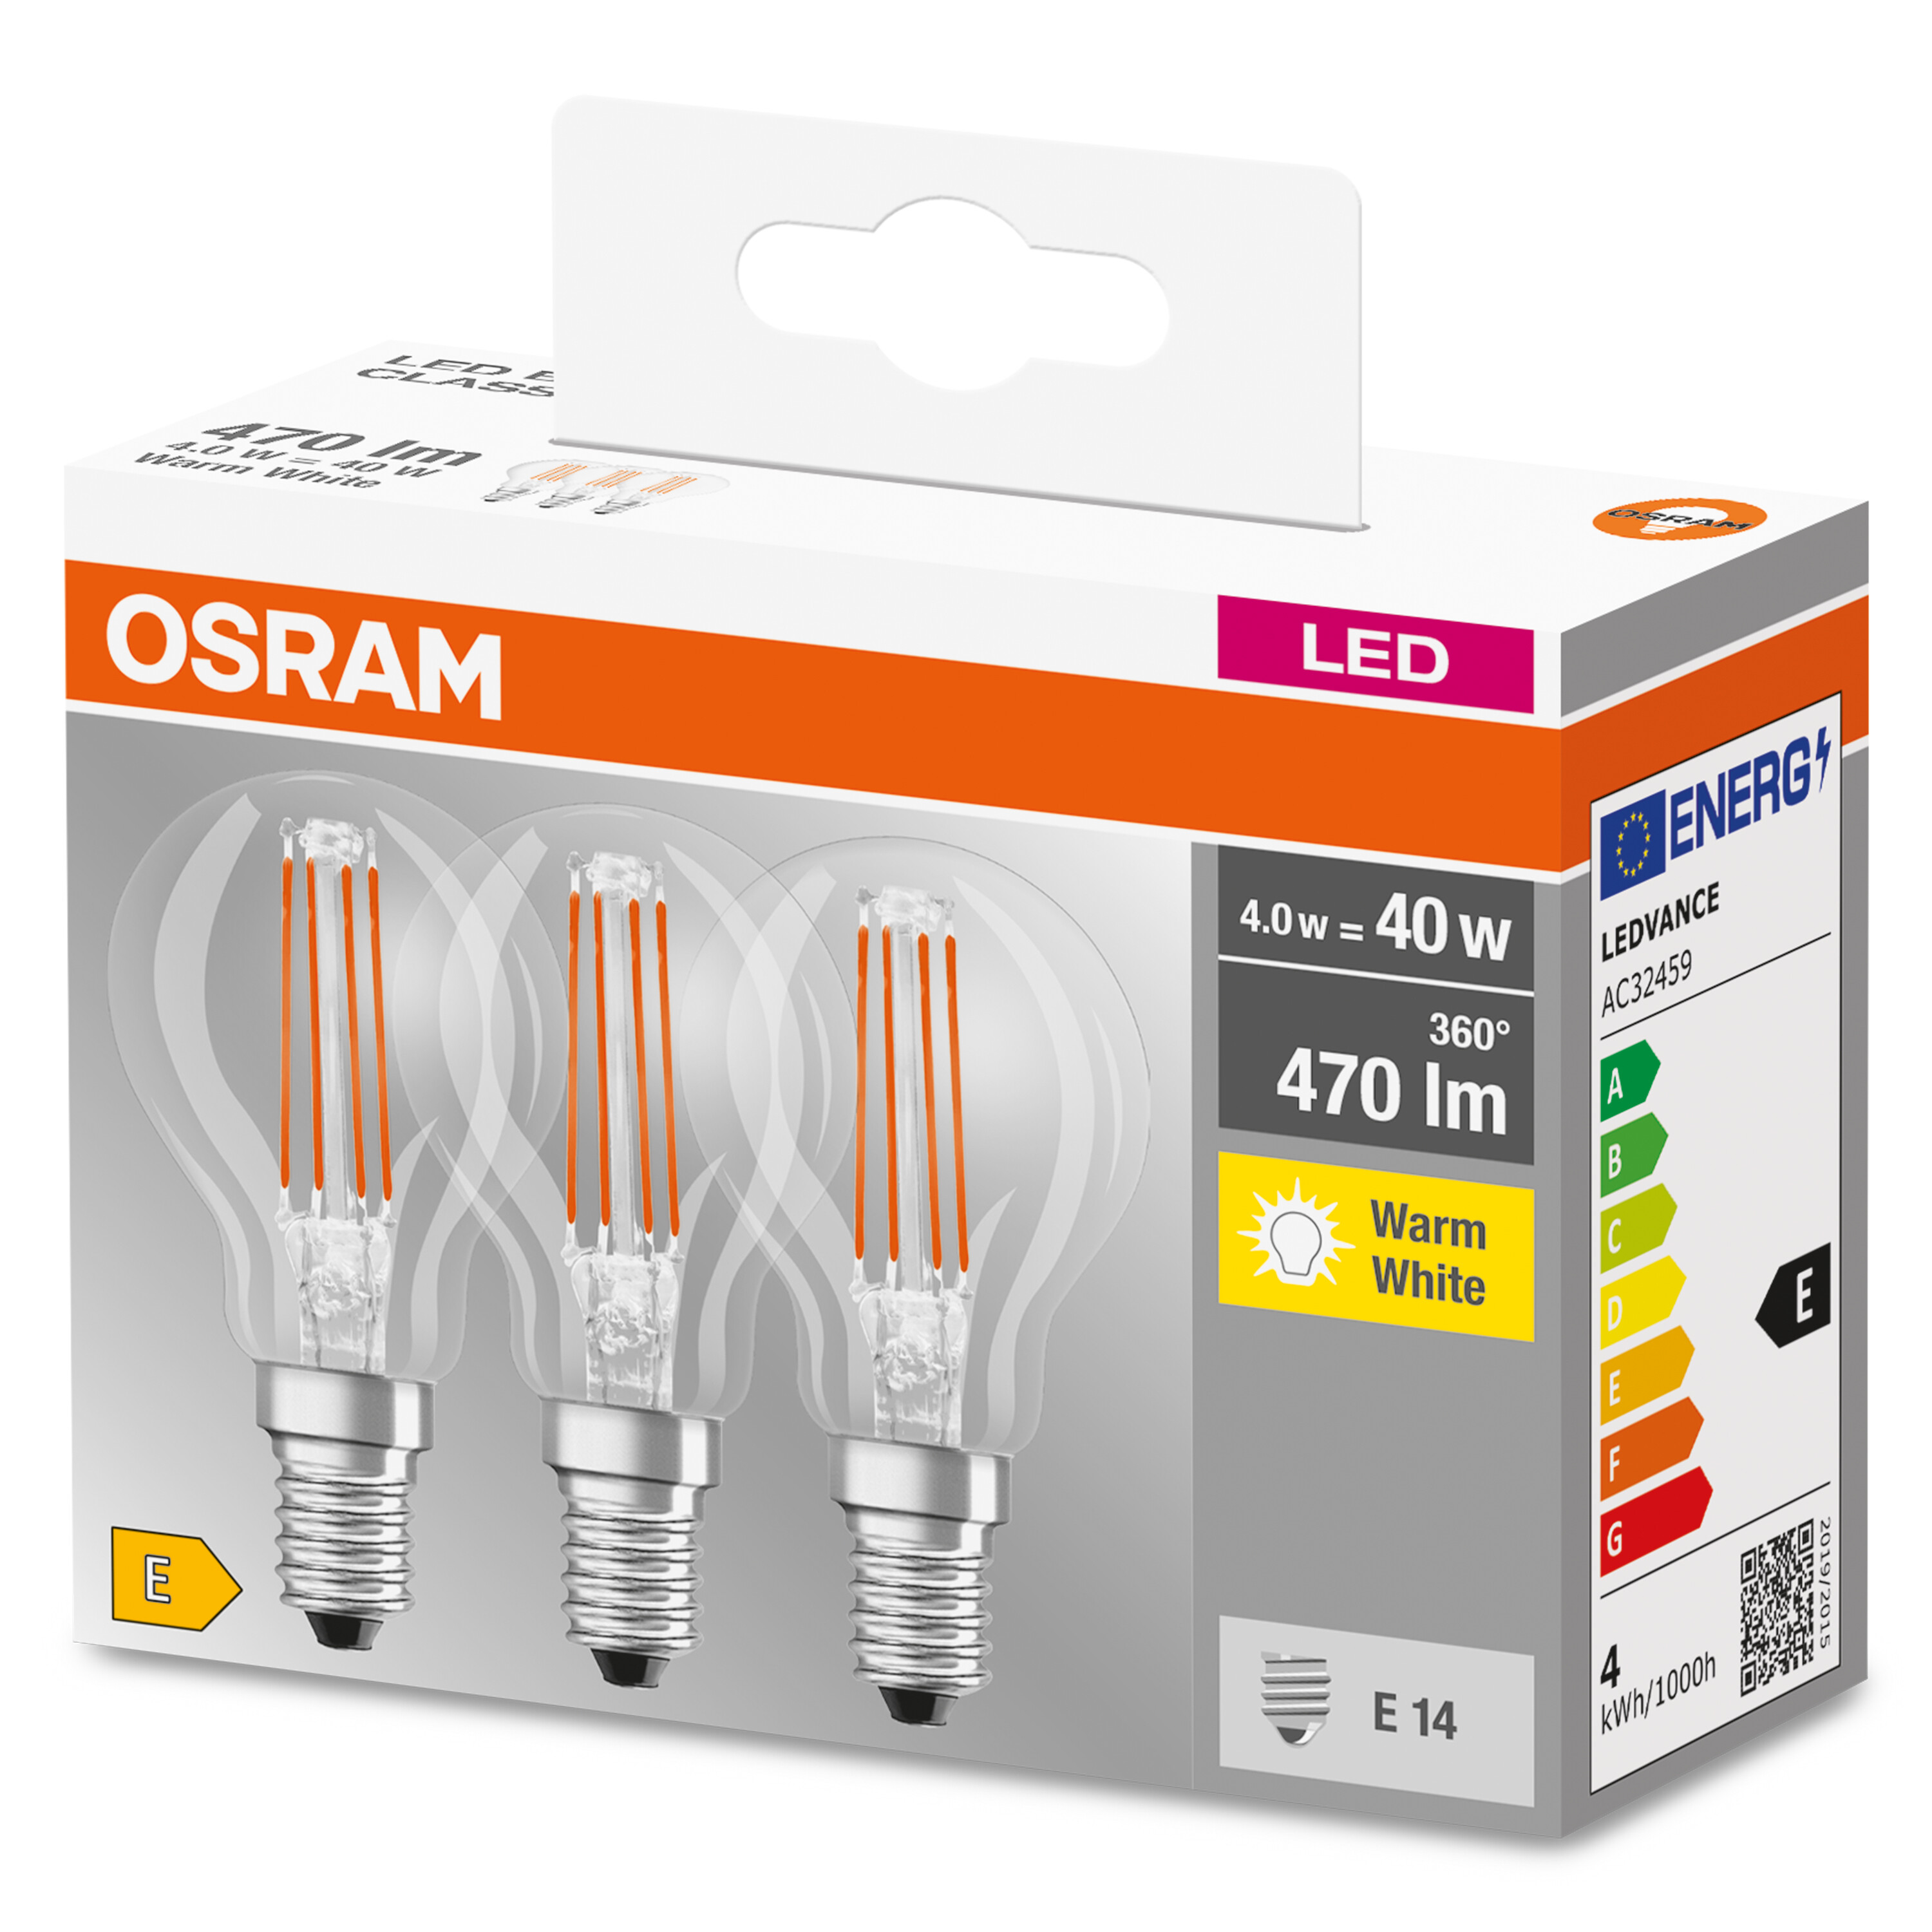 Warmweiß LED P OSRAM  Lumen BASE CLASSIC Lampe LED 470